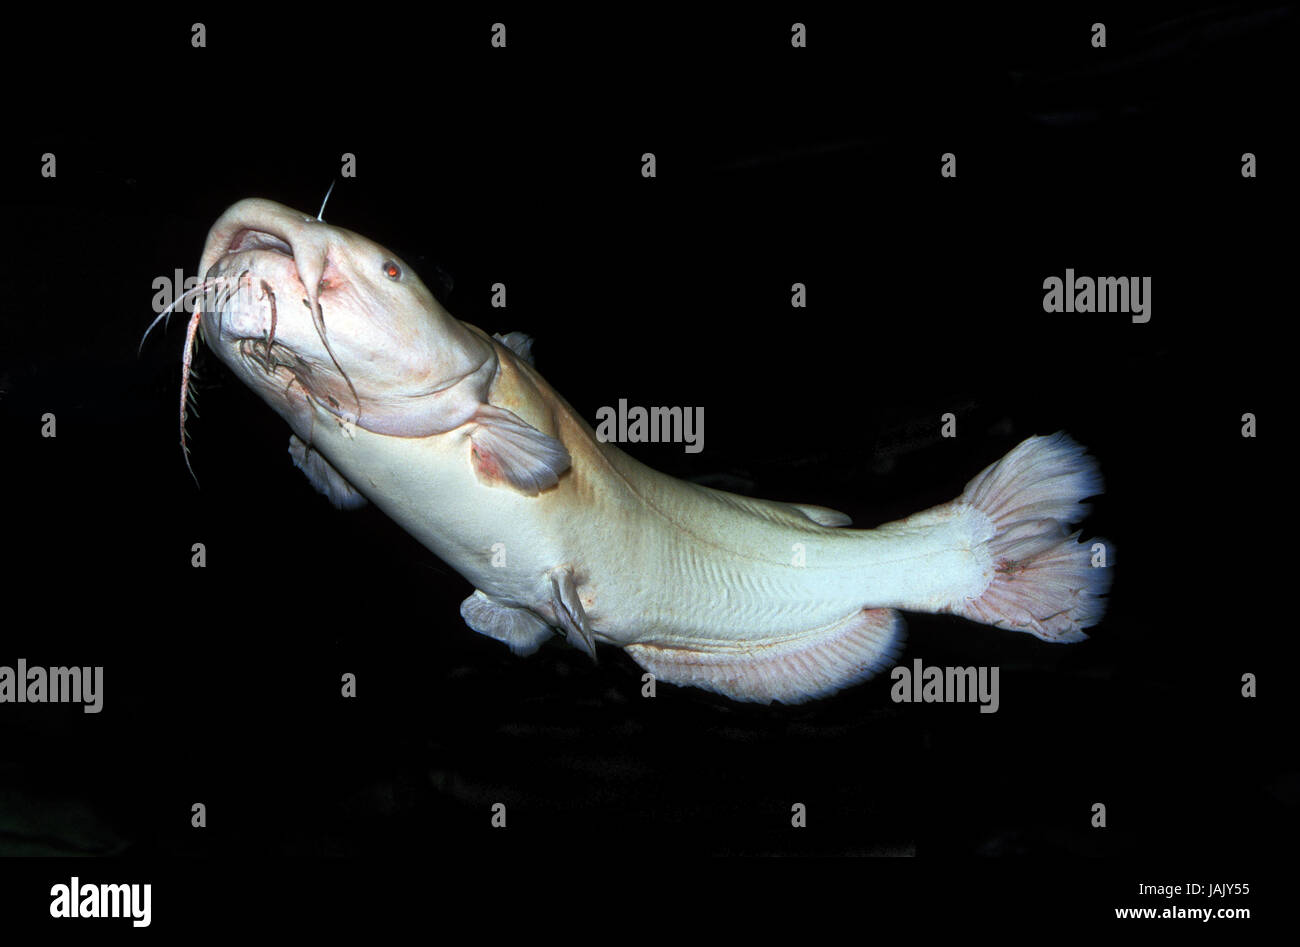 Cat's european catfish,Pylodictis olivaris,albino, Stock Photo